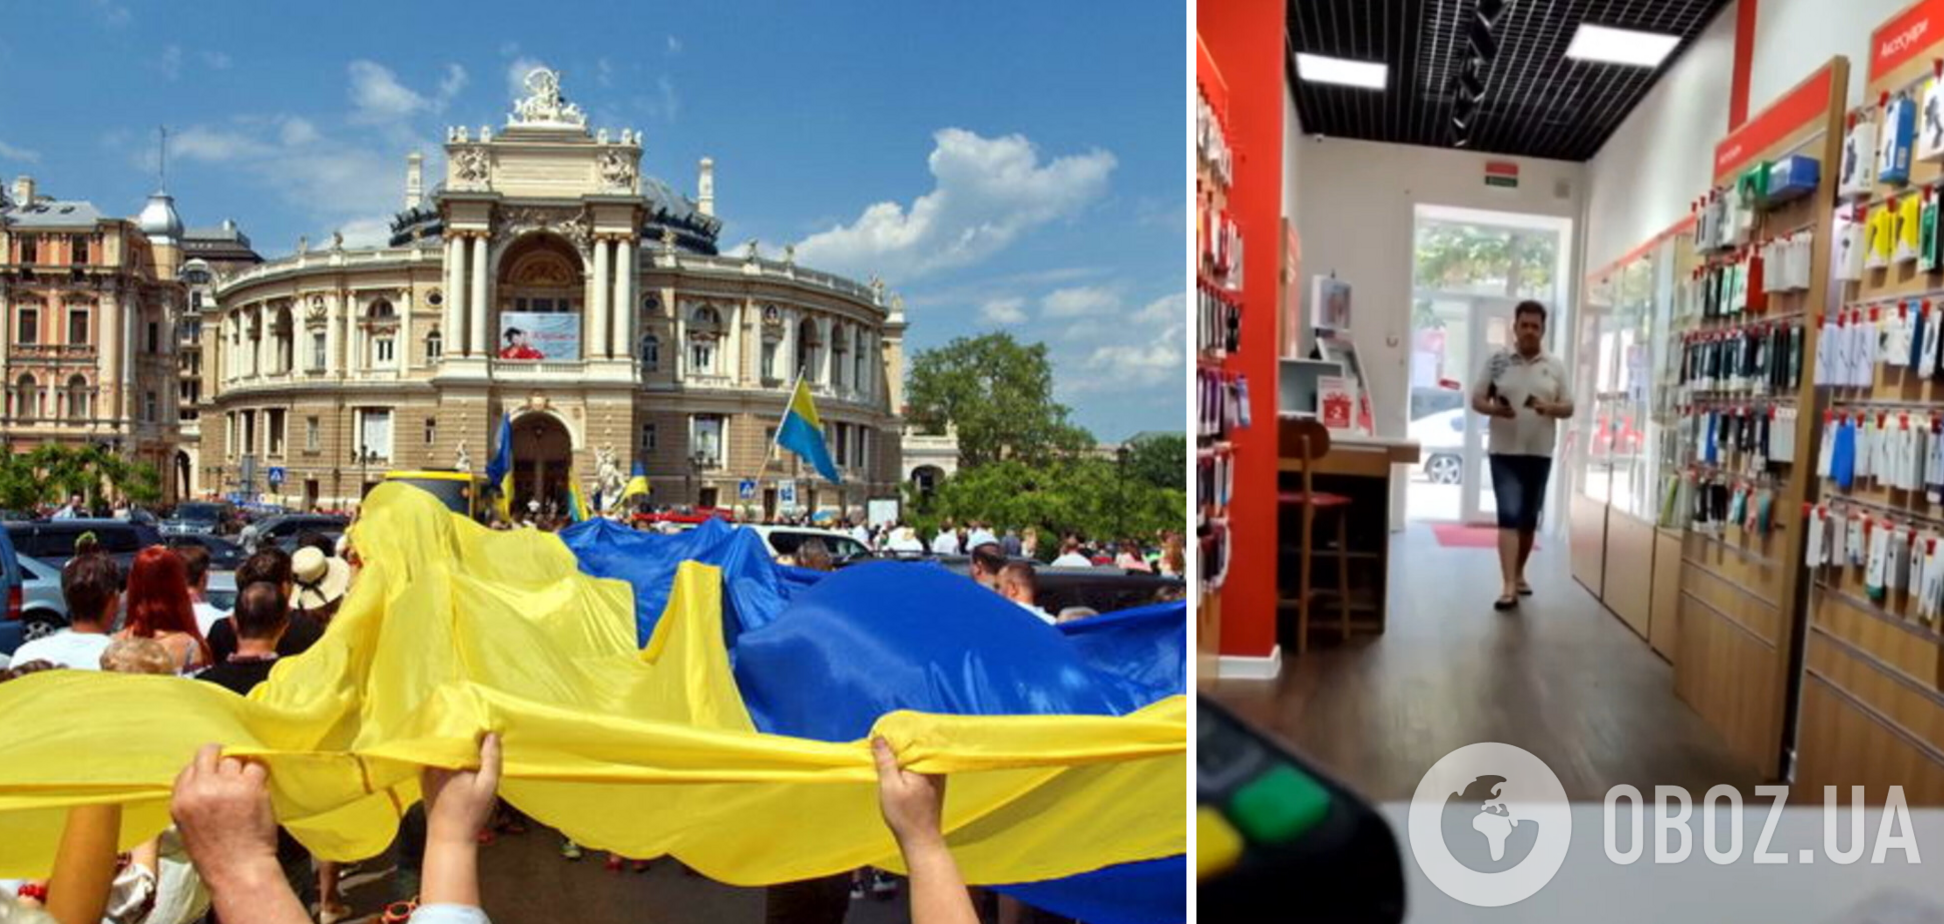 'Ты не в Украине, ты в Одессе!' Агрессивный посетитель магазина устроил скандал, но его поставили на место. Видео